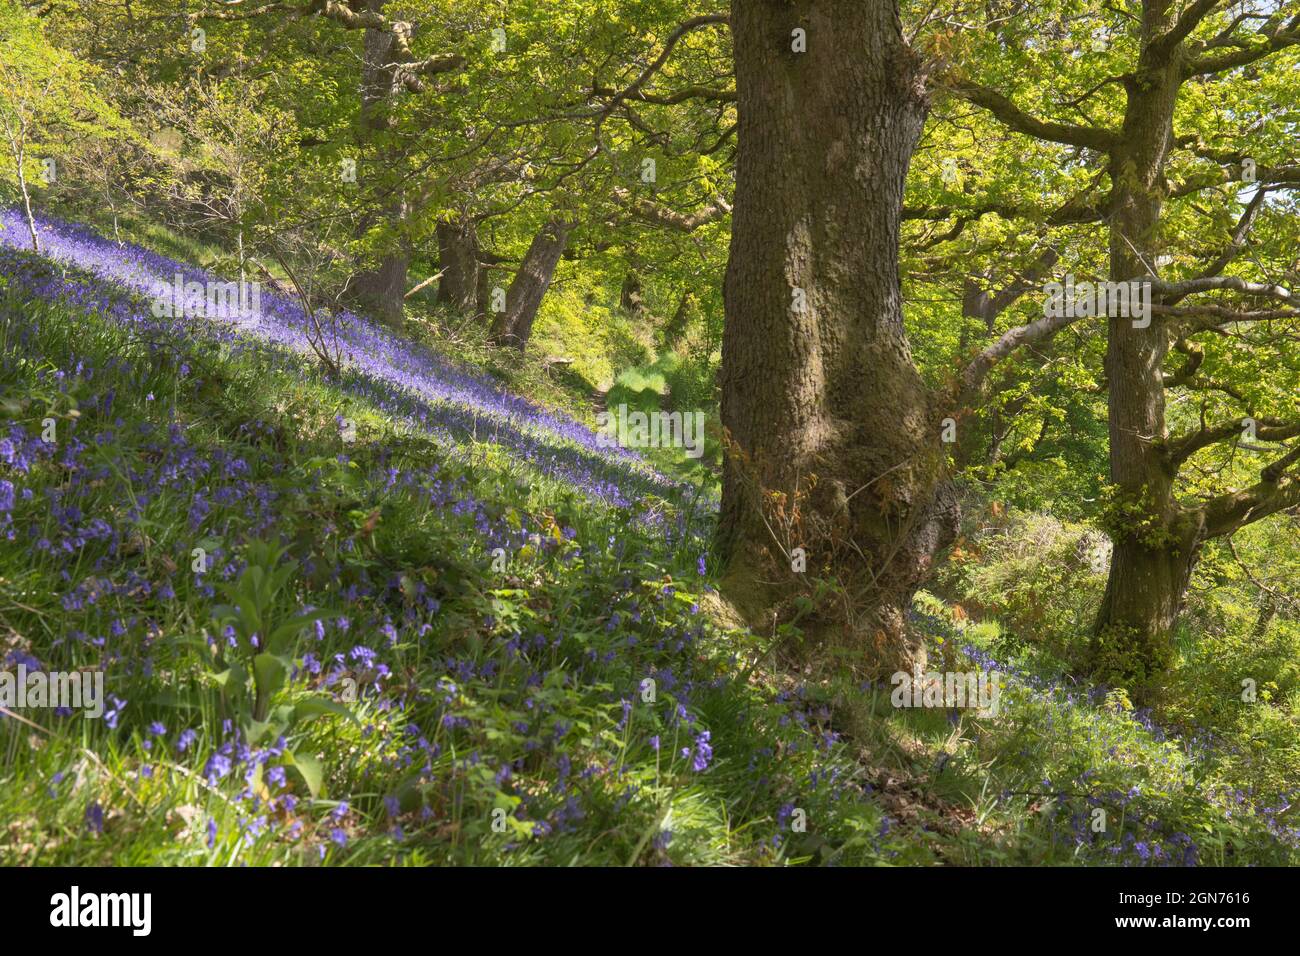 Bluebells (Hyacinthoides non-scripta) floraison dans un bois de chêne. Powys, Pays de Galles. Mai. Banque D'Images